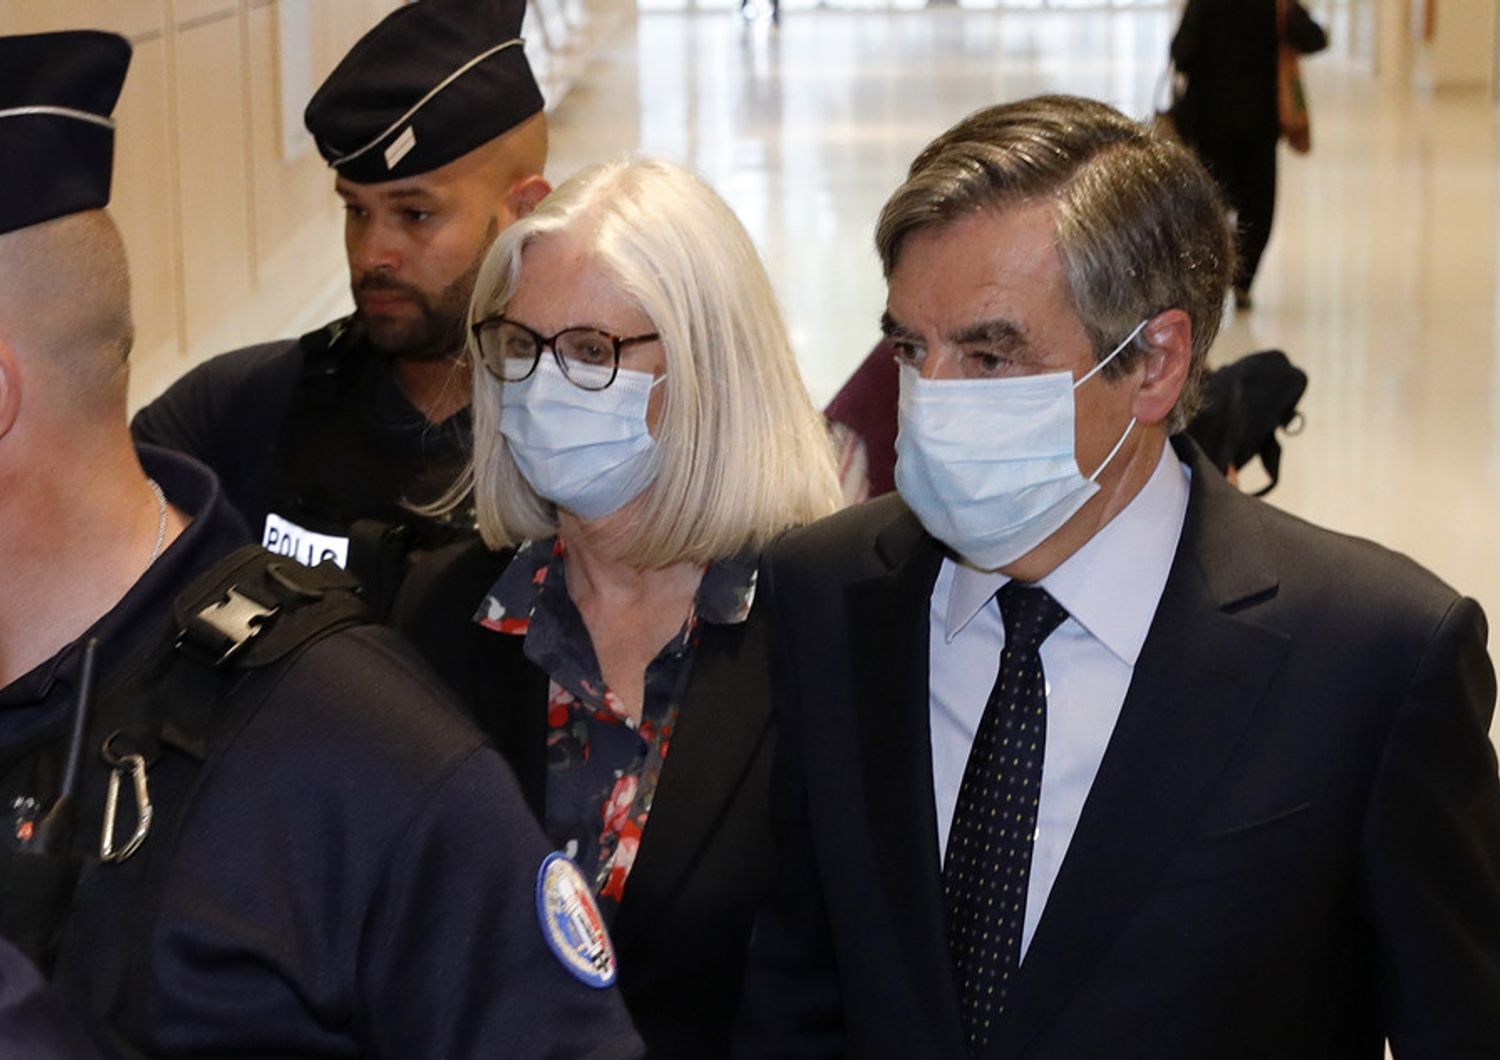 L'ex premier francese Francois Fillon e la moglie Penelope lasciano il tribunale dopo la condanna